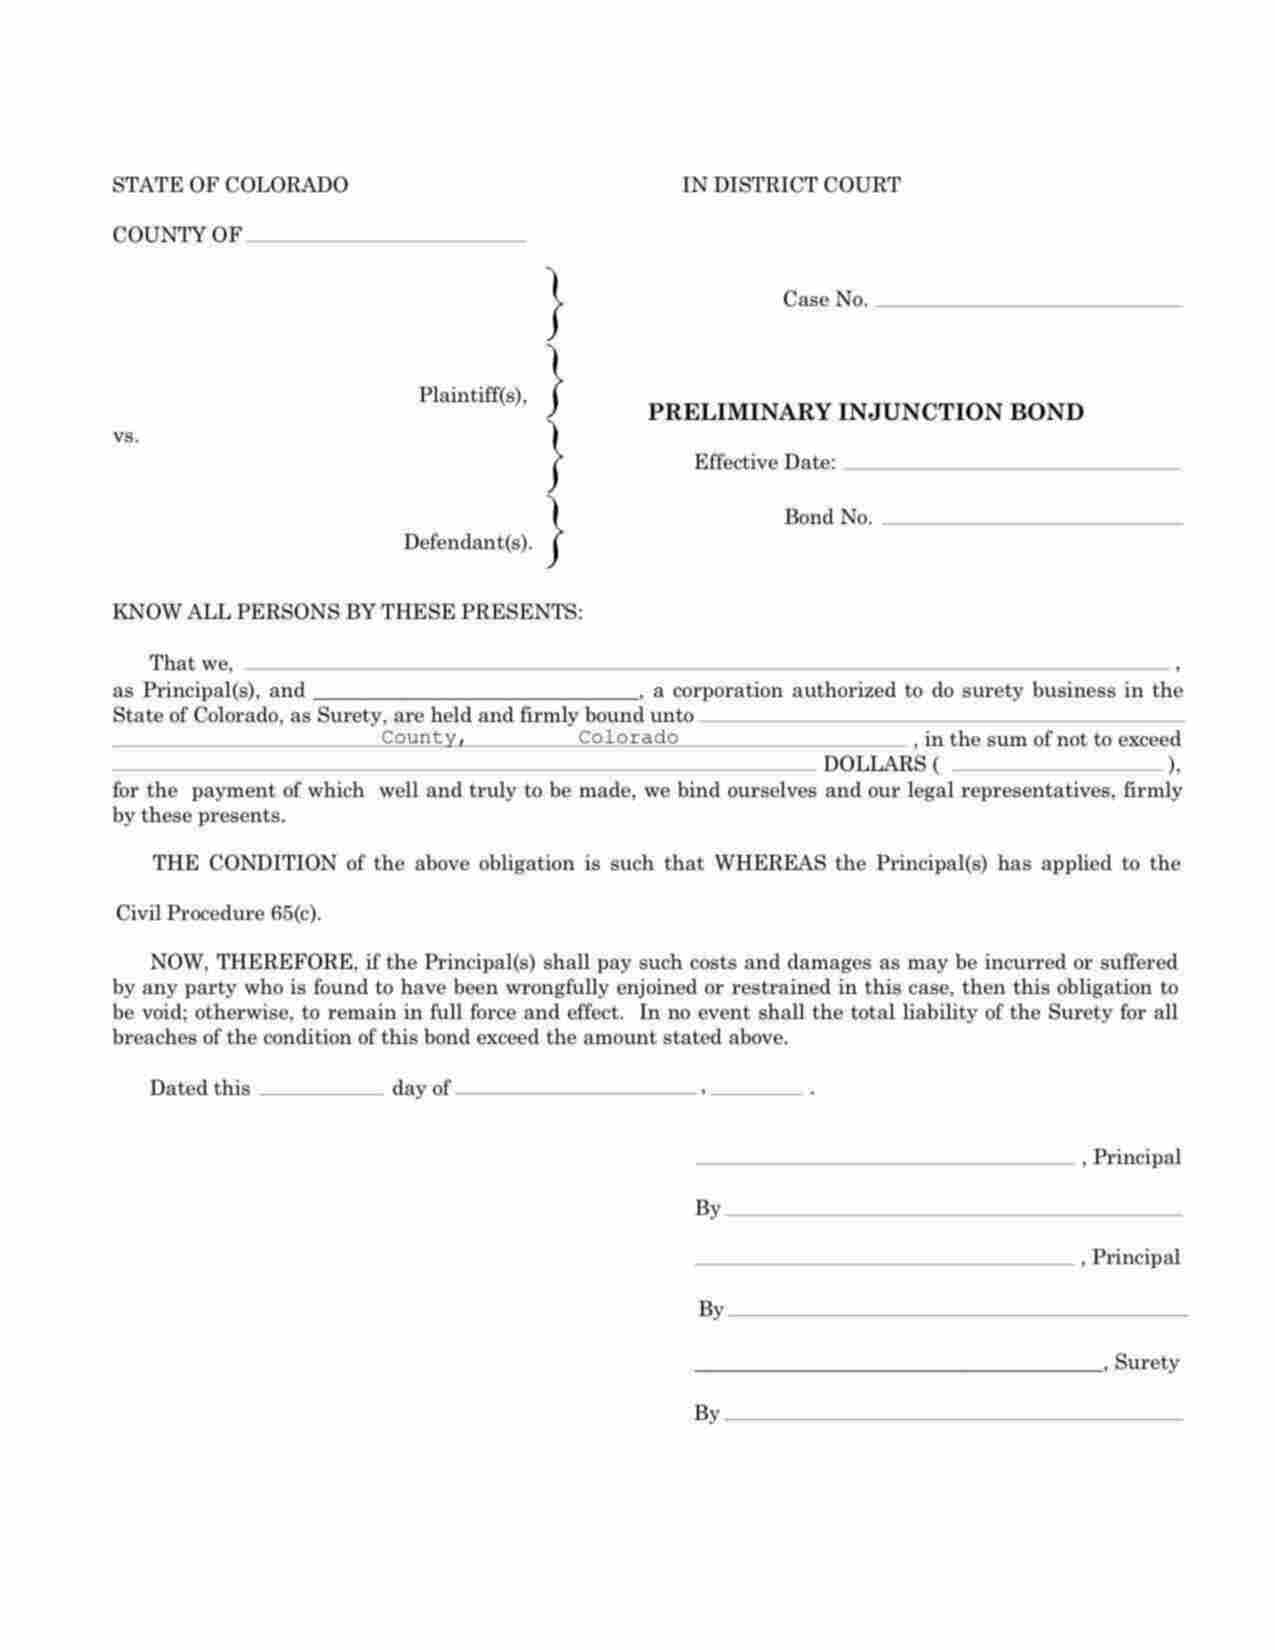 Colorado Preliminary Injunction Bond Form